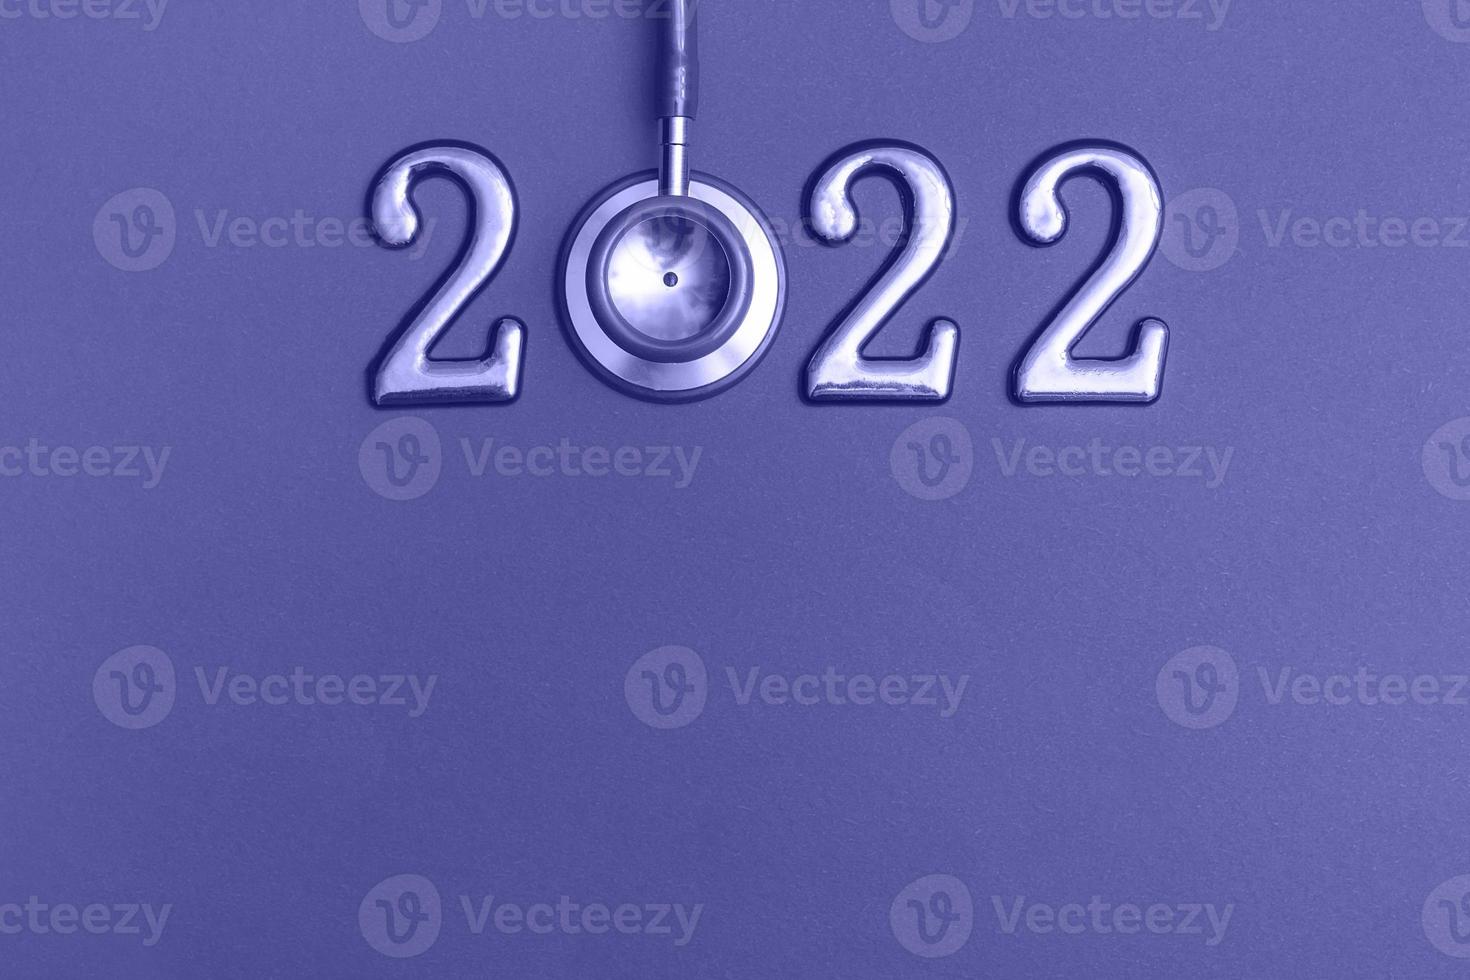 stethoskop nummer 2022 auf sehr peri hintergrund kreative idee neuer trend medizinische banner kalenderabdeckung nahaufnahme mit kopierraum foto